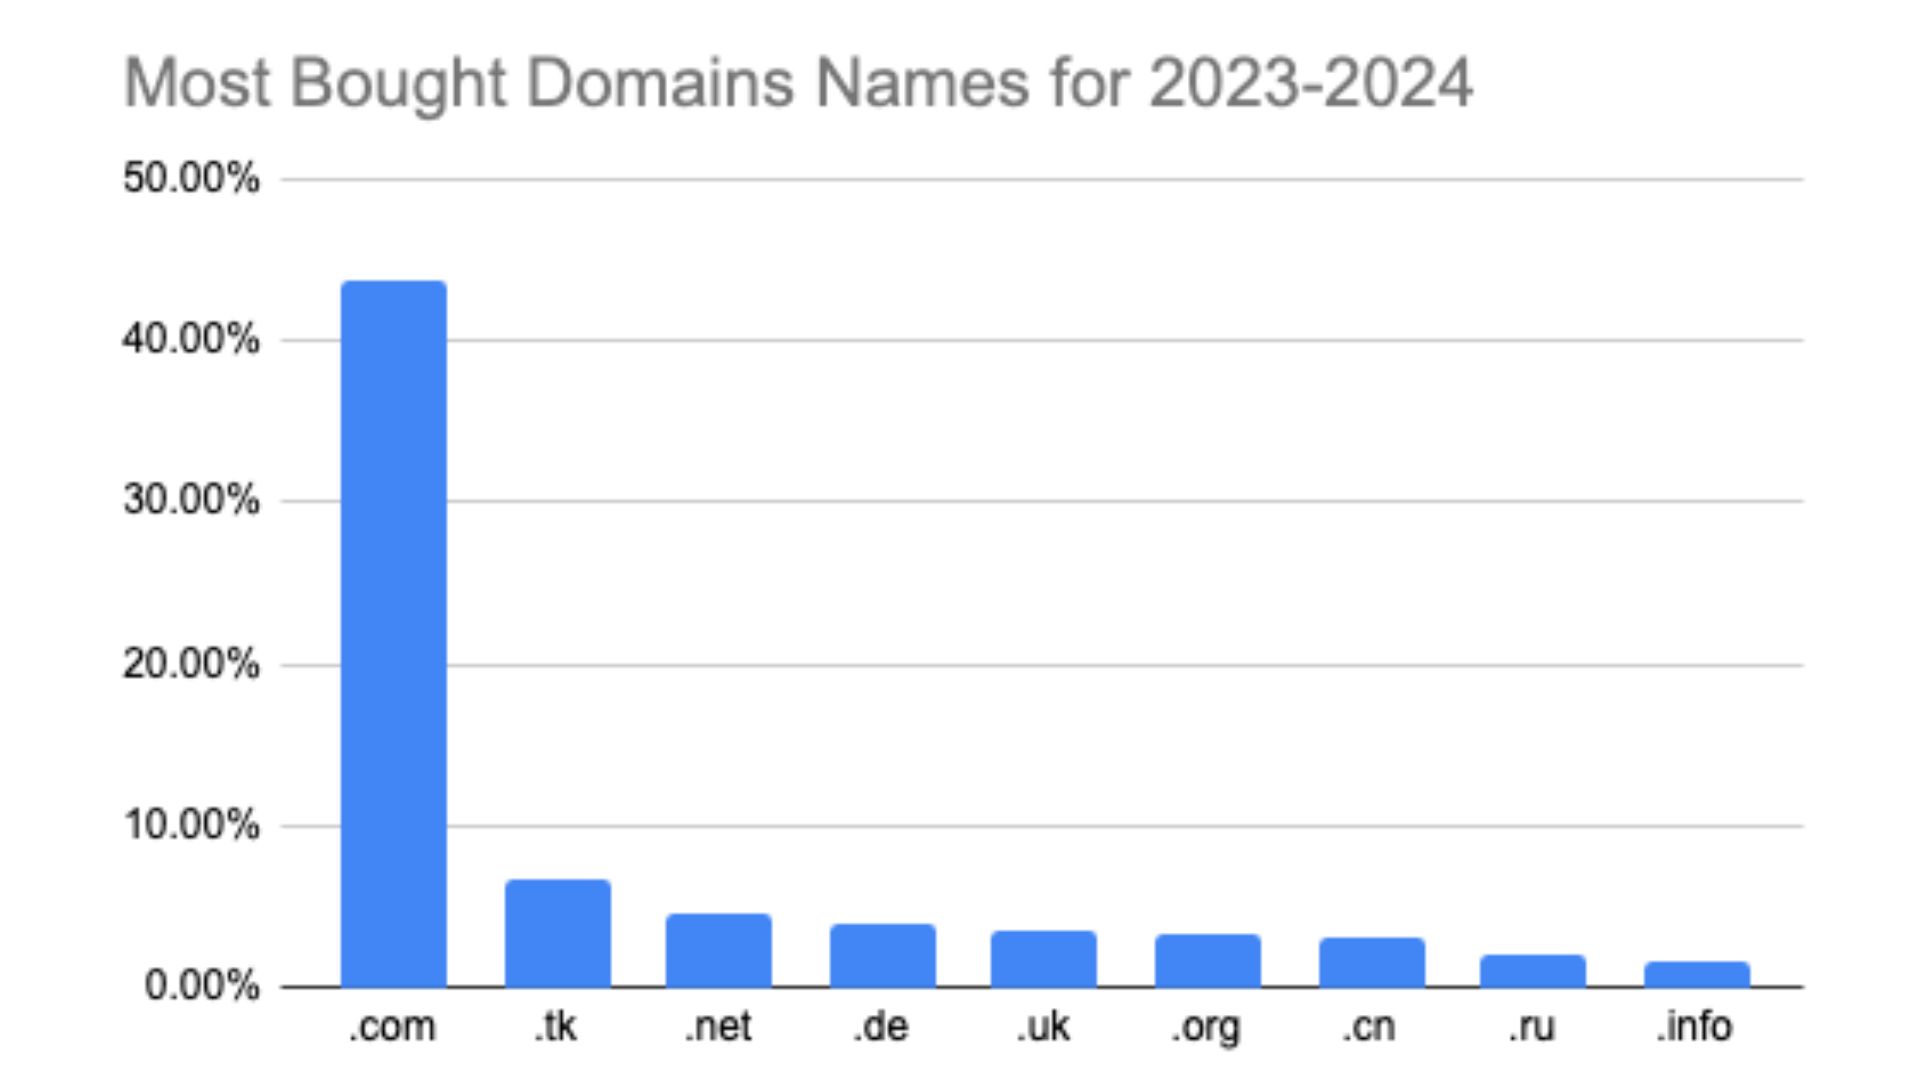 Dominios más comprados por extensión de dominio.